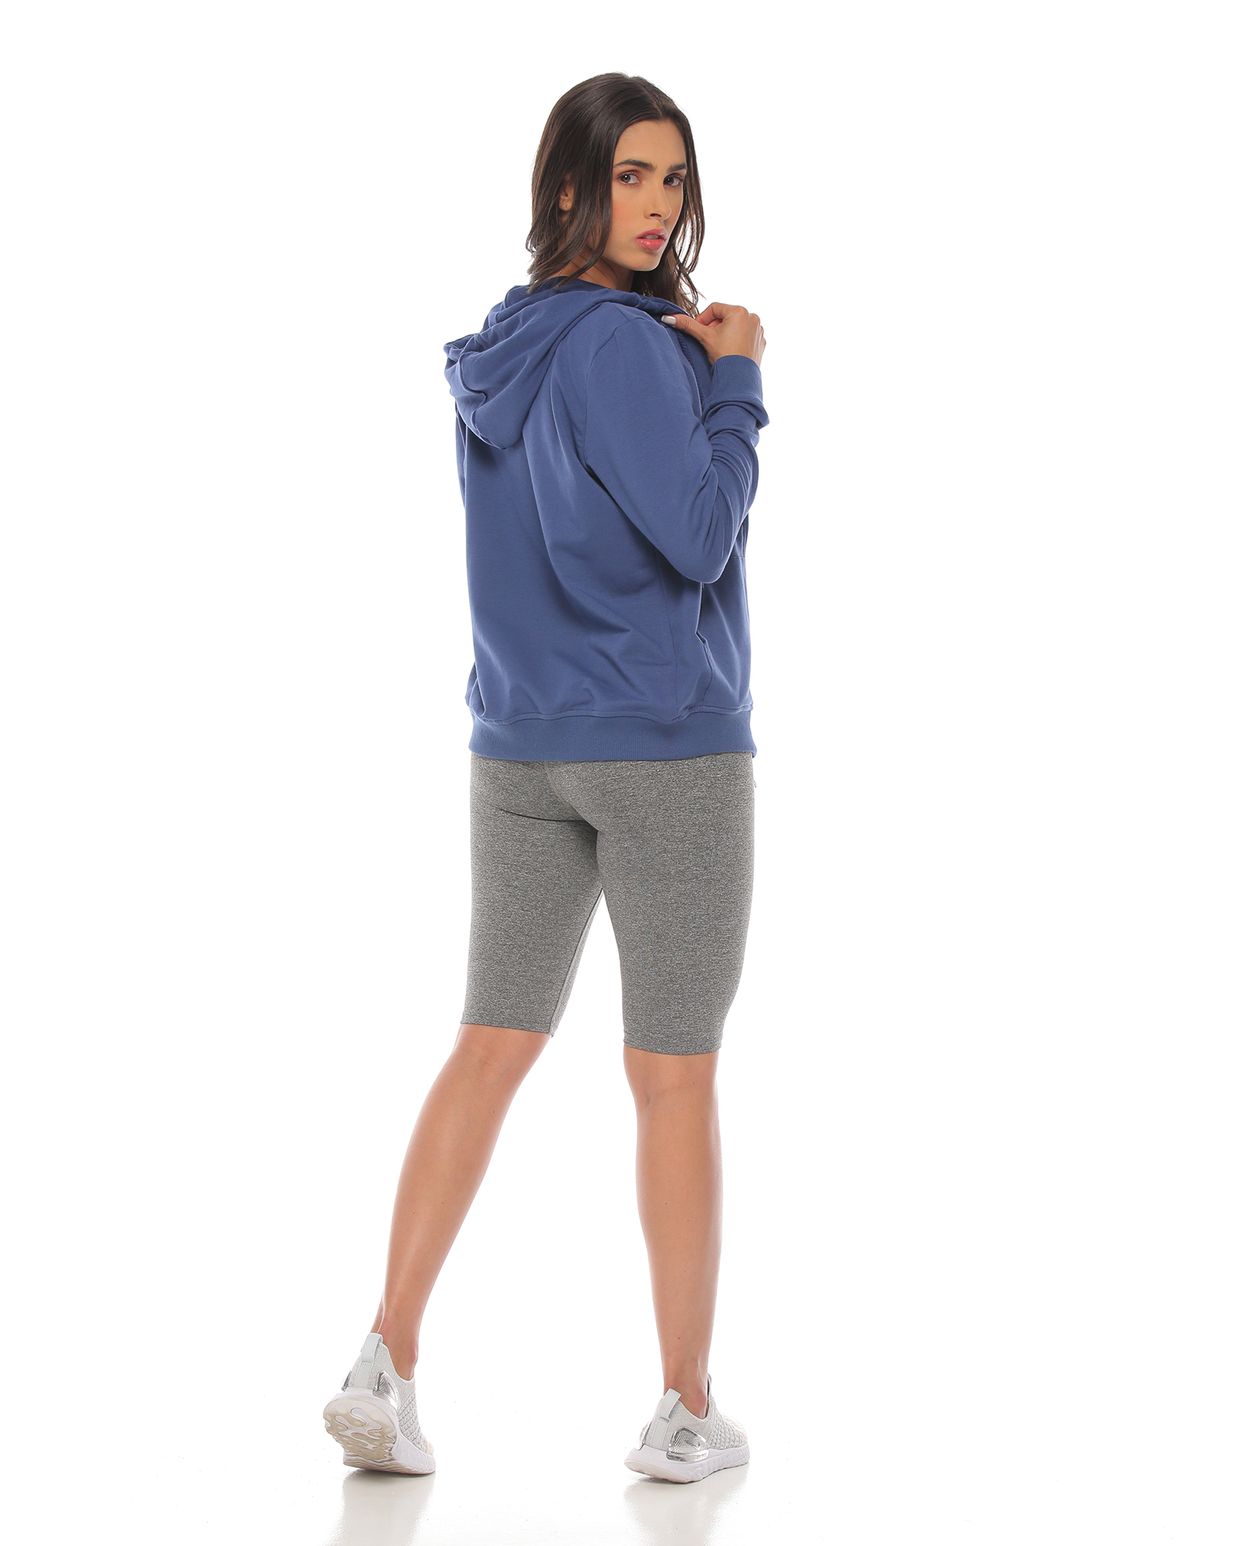 modelo con buzo deportivo con capota color azul y top y short deportivo color gris para mujer cuerpo completo parte trasera